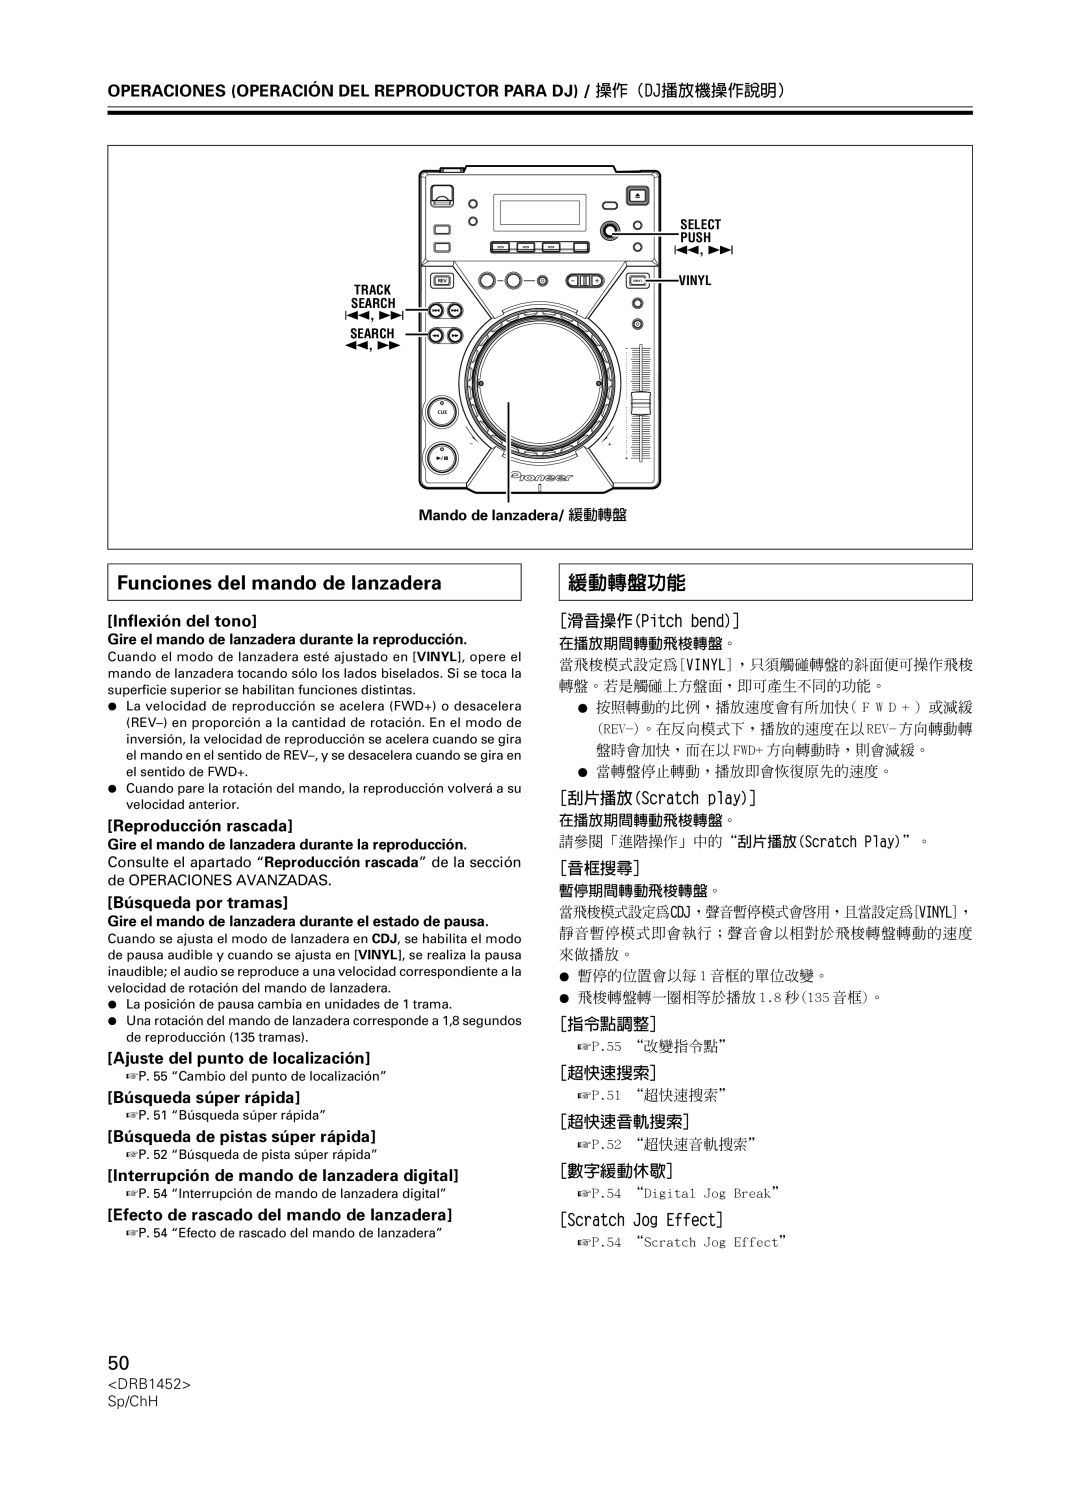 Pioneer CDJ-400 Funciones del mando de lanzadera, 緩動轉盤功能, Inflexión del tono, Reproducción rascada, Búsqueda por tramas 